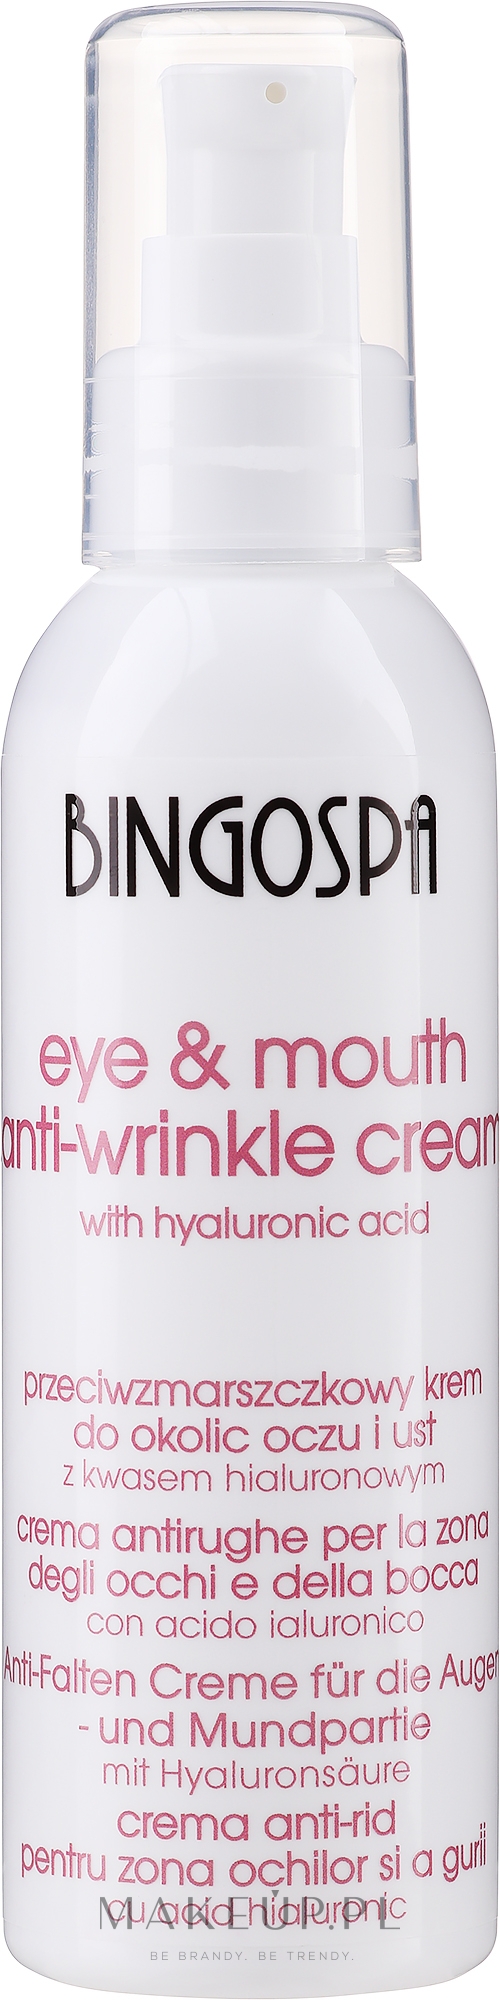 Przeciwzmarszczkowy krem z kwasem hialuronowym do okolic oczu i ust - BingoSpa Anti-Wrinkle Cream For Eye And Mouth Area — Zdjęcie 135 g